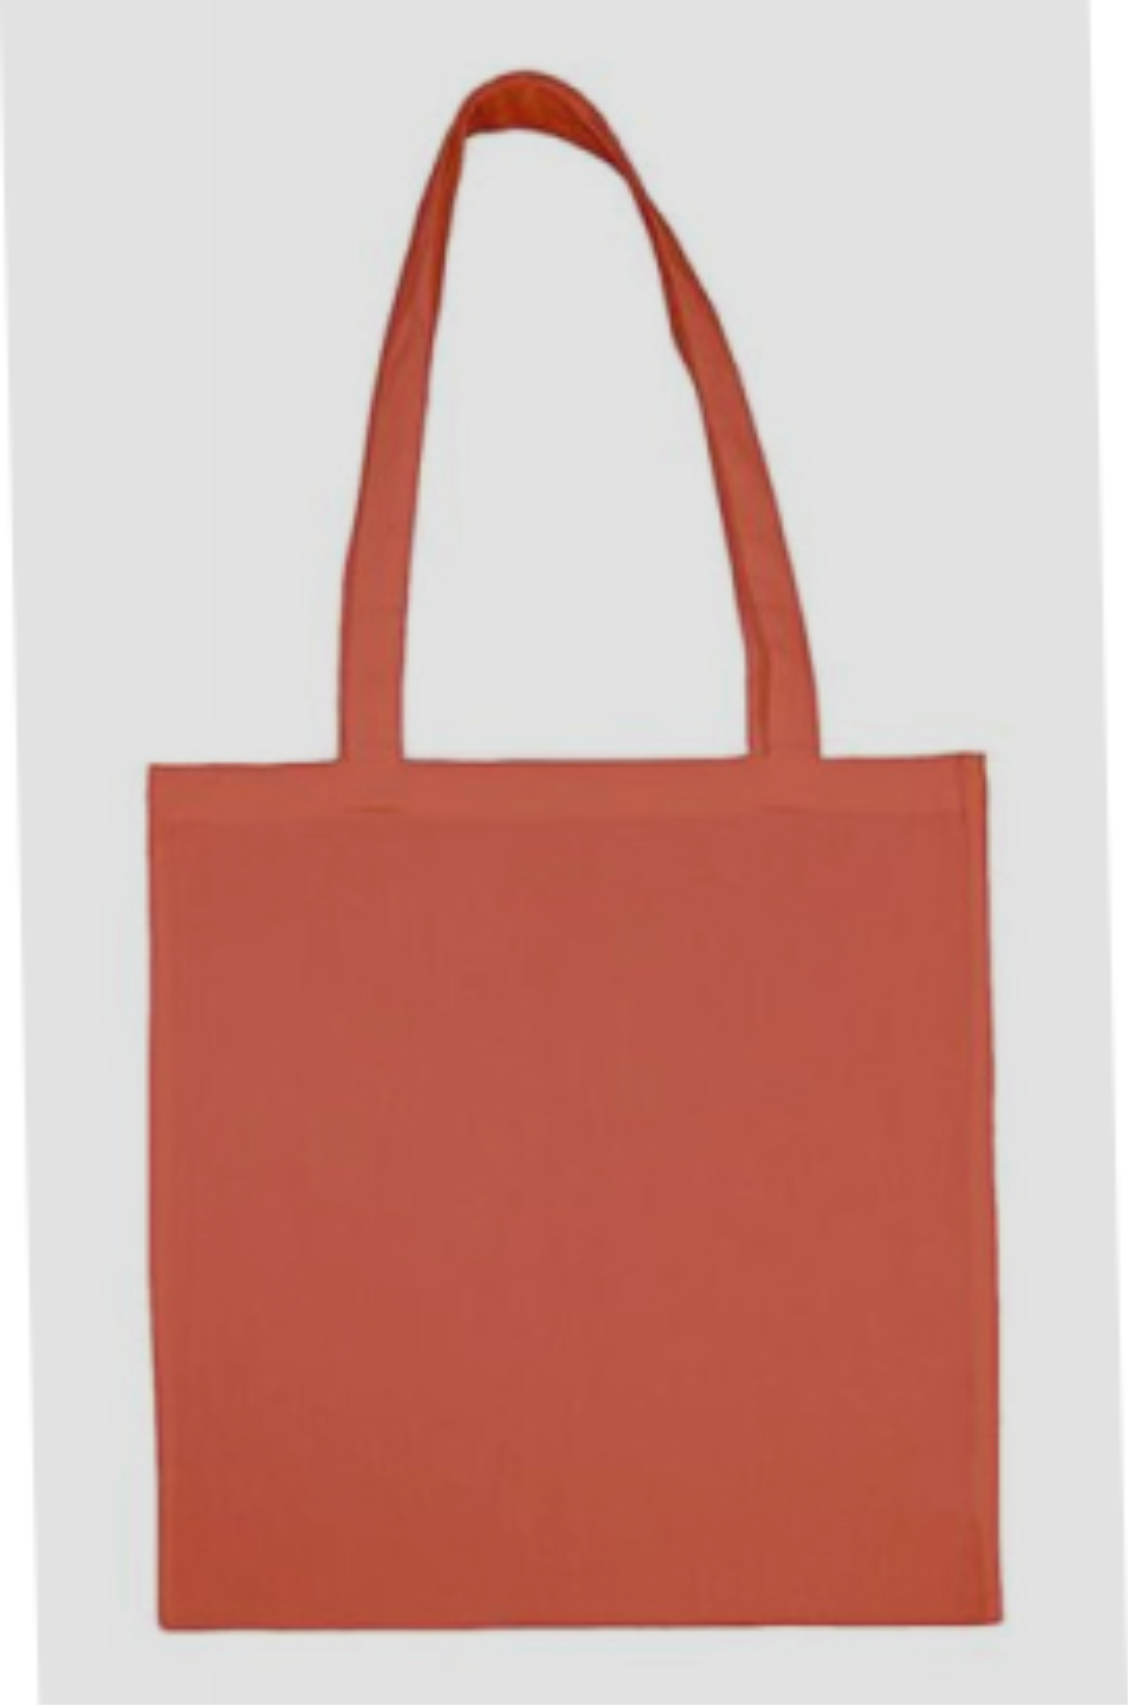 SG - Výprodej bavlněná taška barevná dlouhé ucho 601.57 (nejprodávanější typ tašky 601.57 )